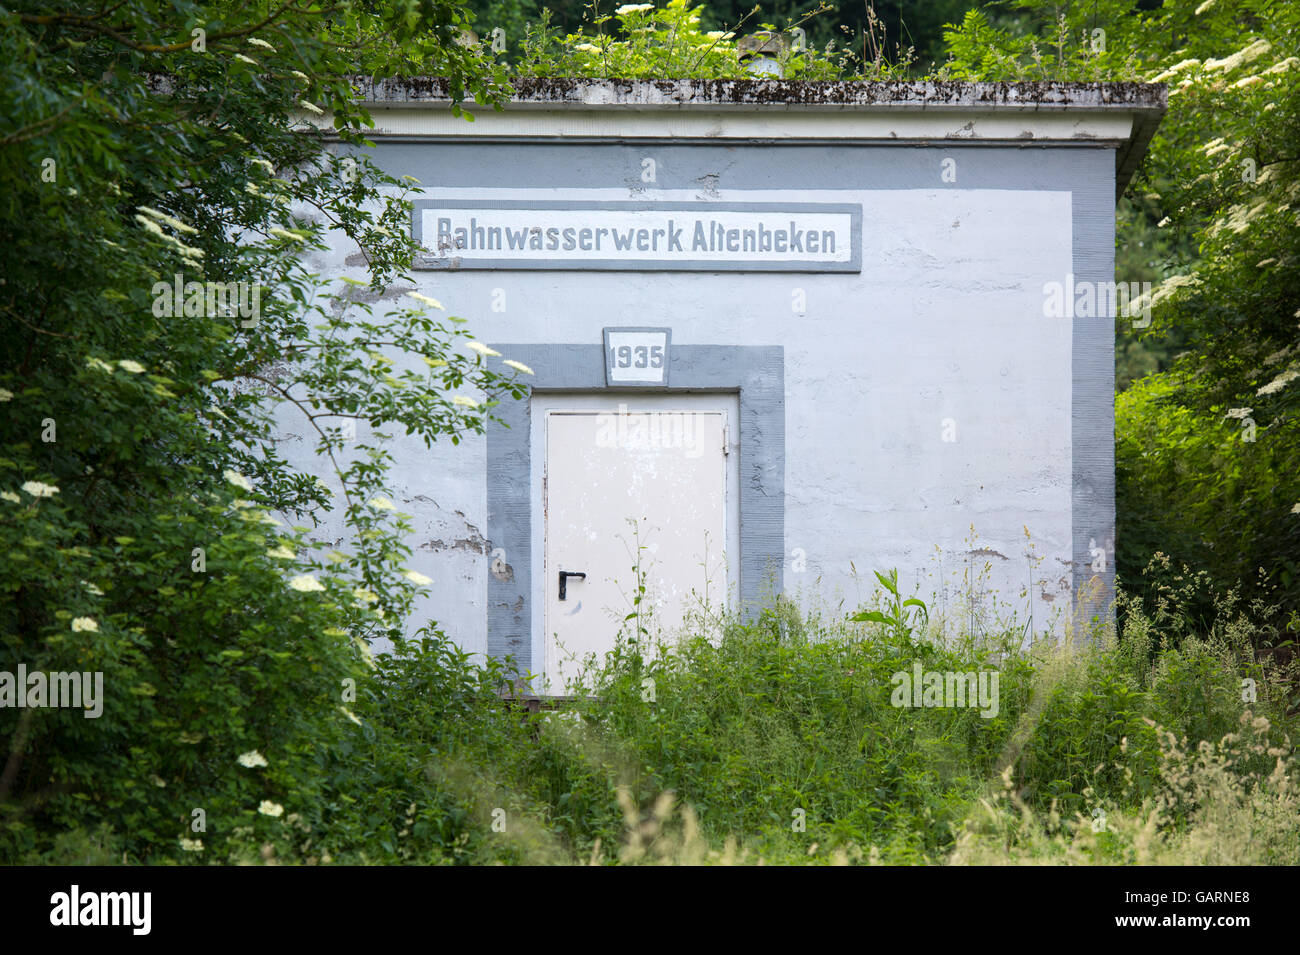 Deutschland, Nordrhein-Westfalen, Altenbeken, Bahnwasserwerk, Wasserspeicher für die alten Dampflokomotiven Stock Photo